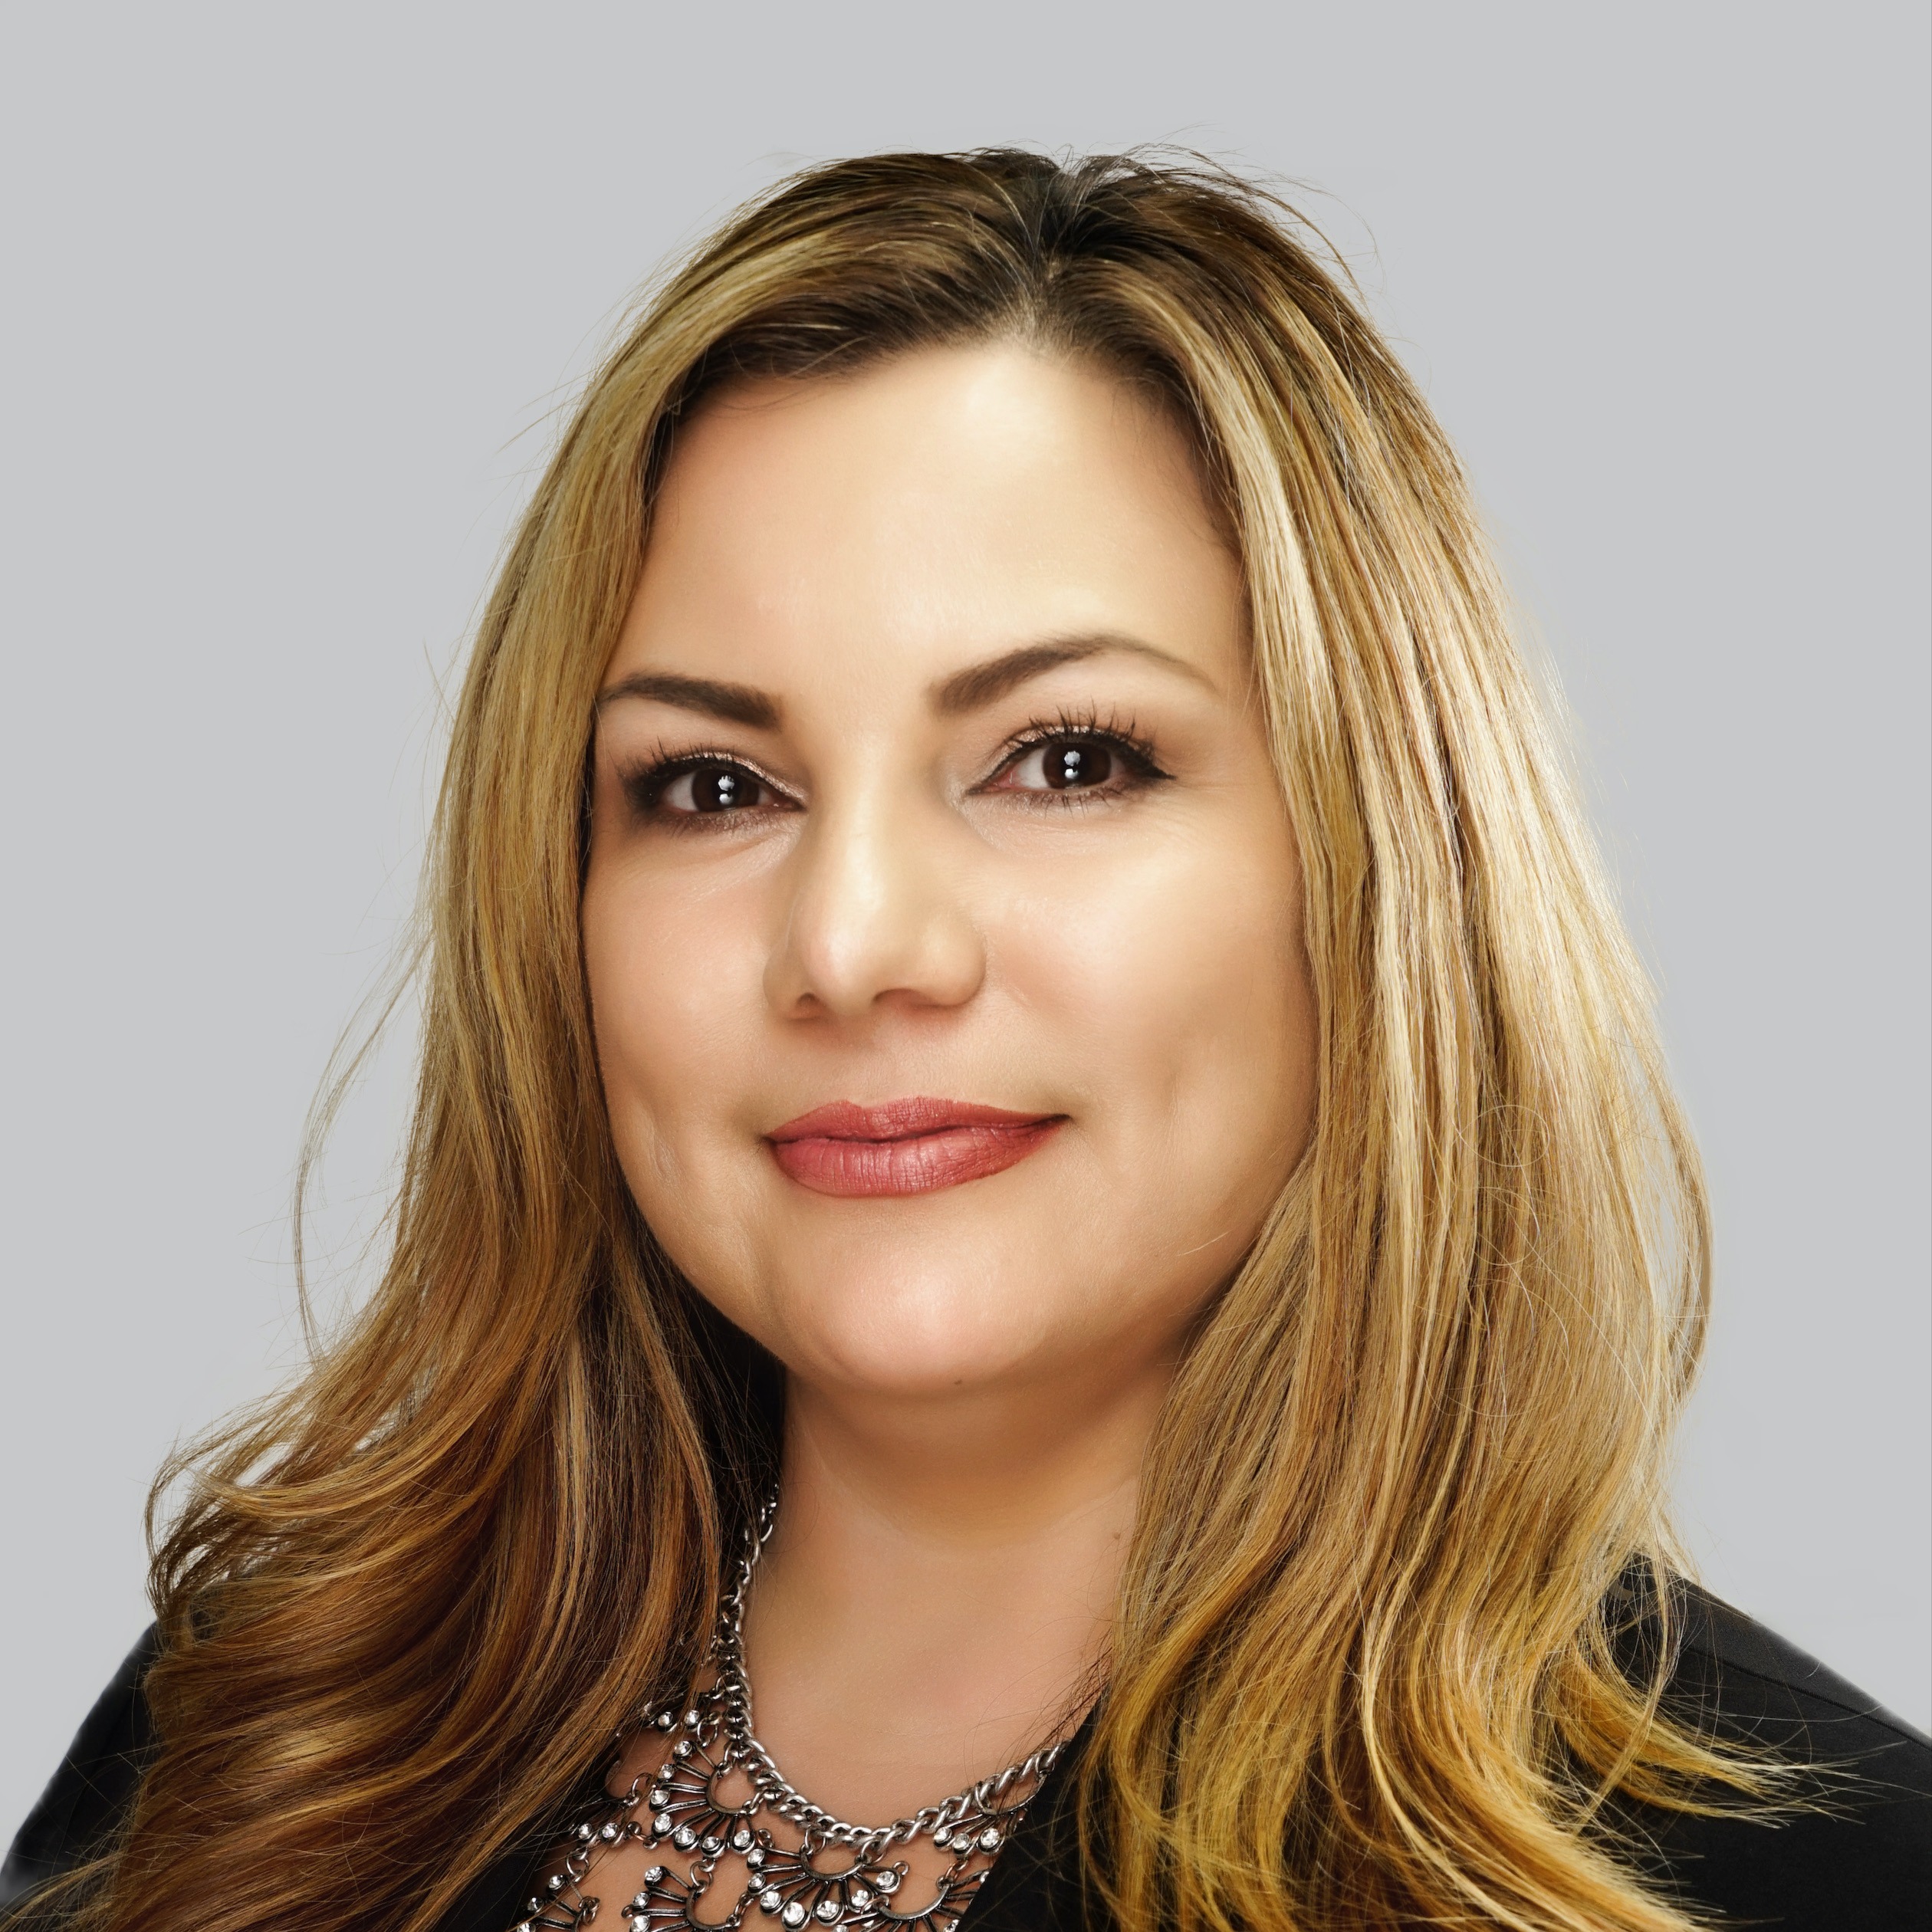 Gina Marie Herrera